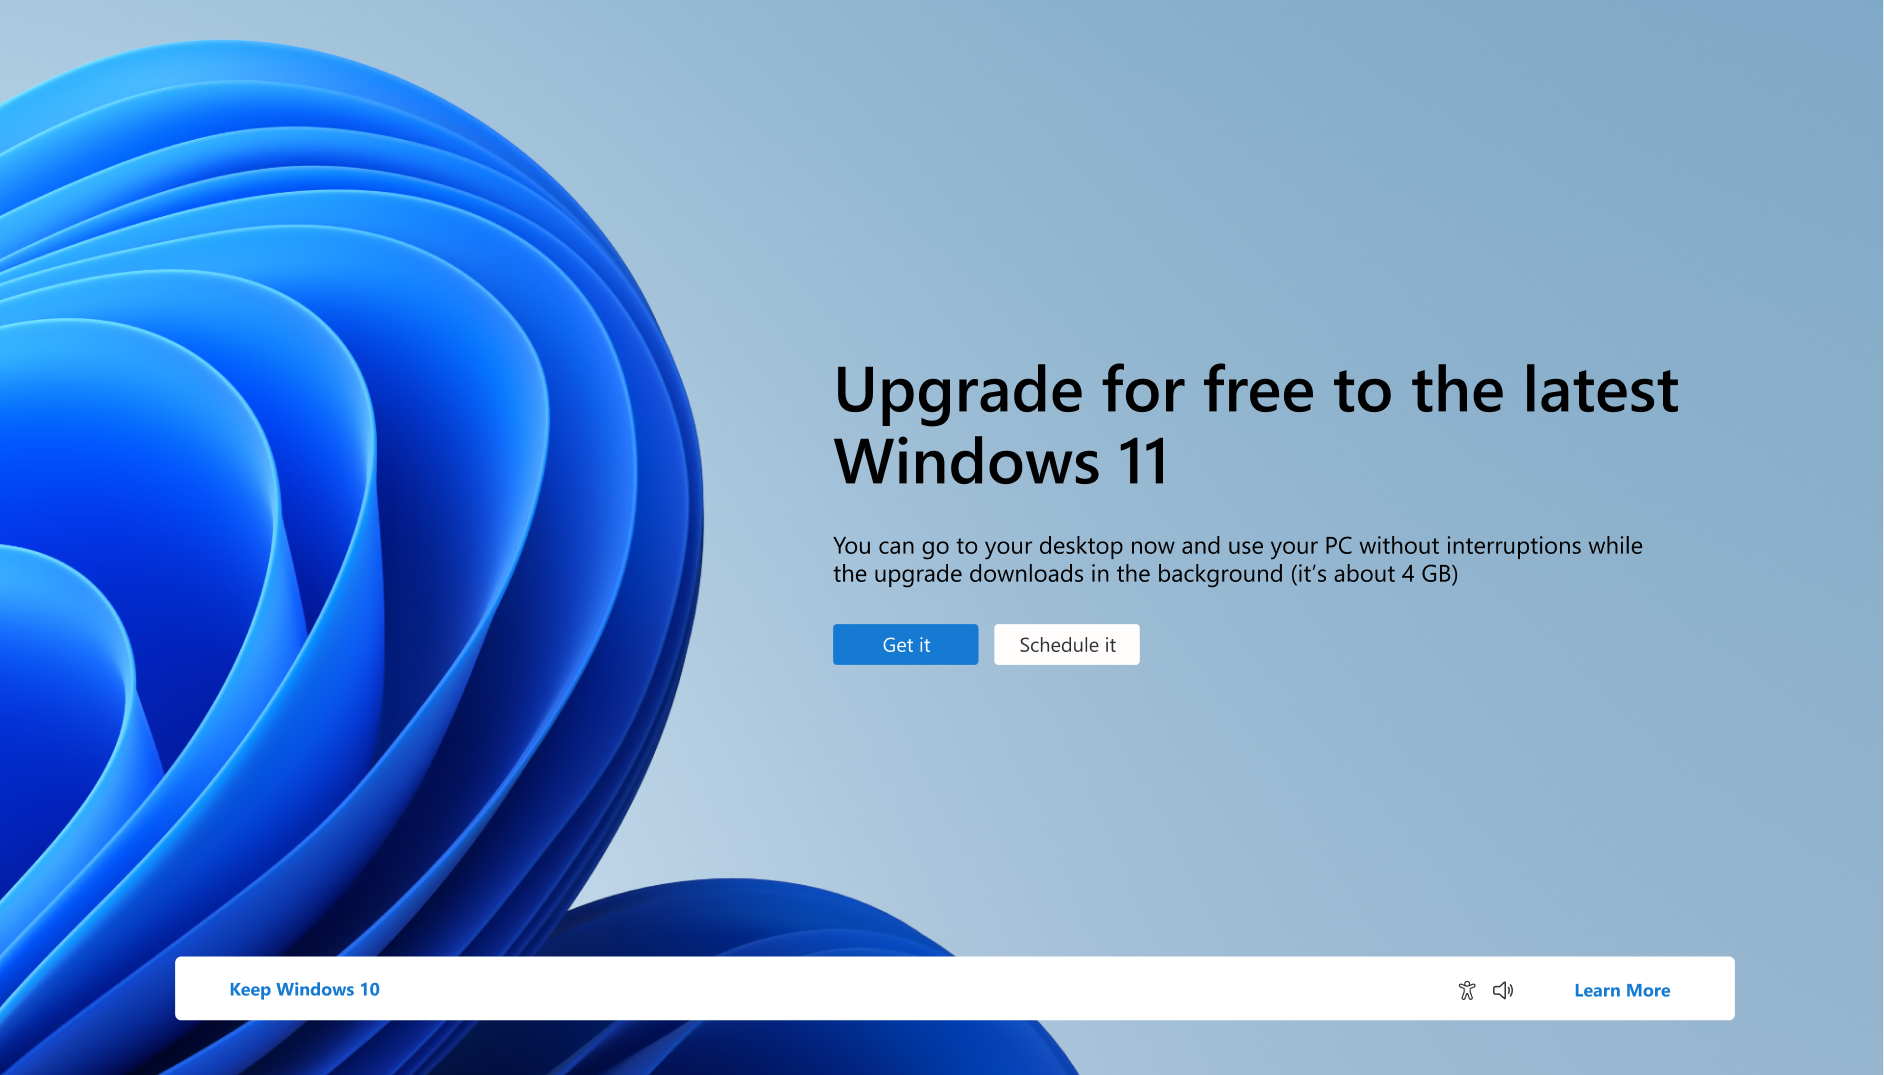 Снимок экрана: уведомление о том, что компьютер может бесплатно обновиться до Windows 11.